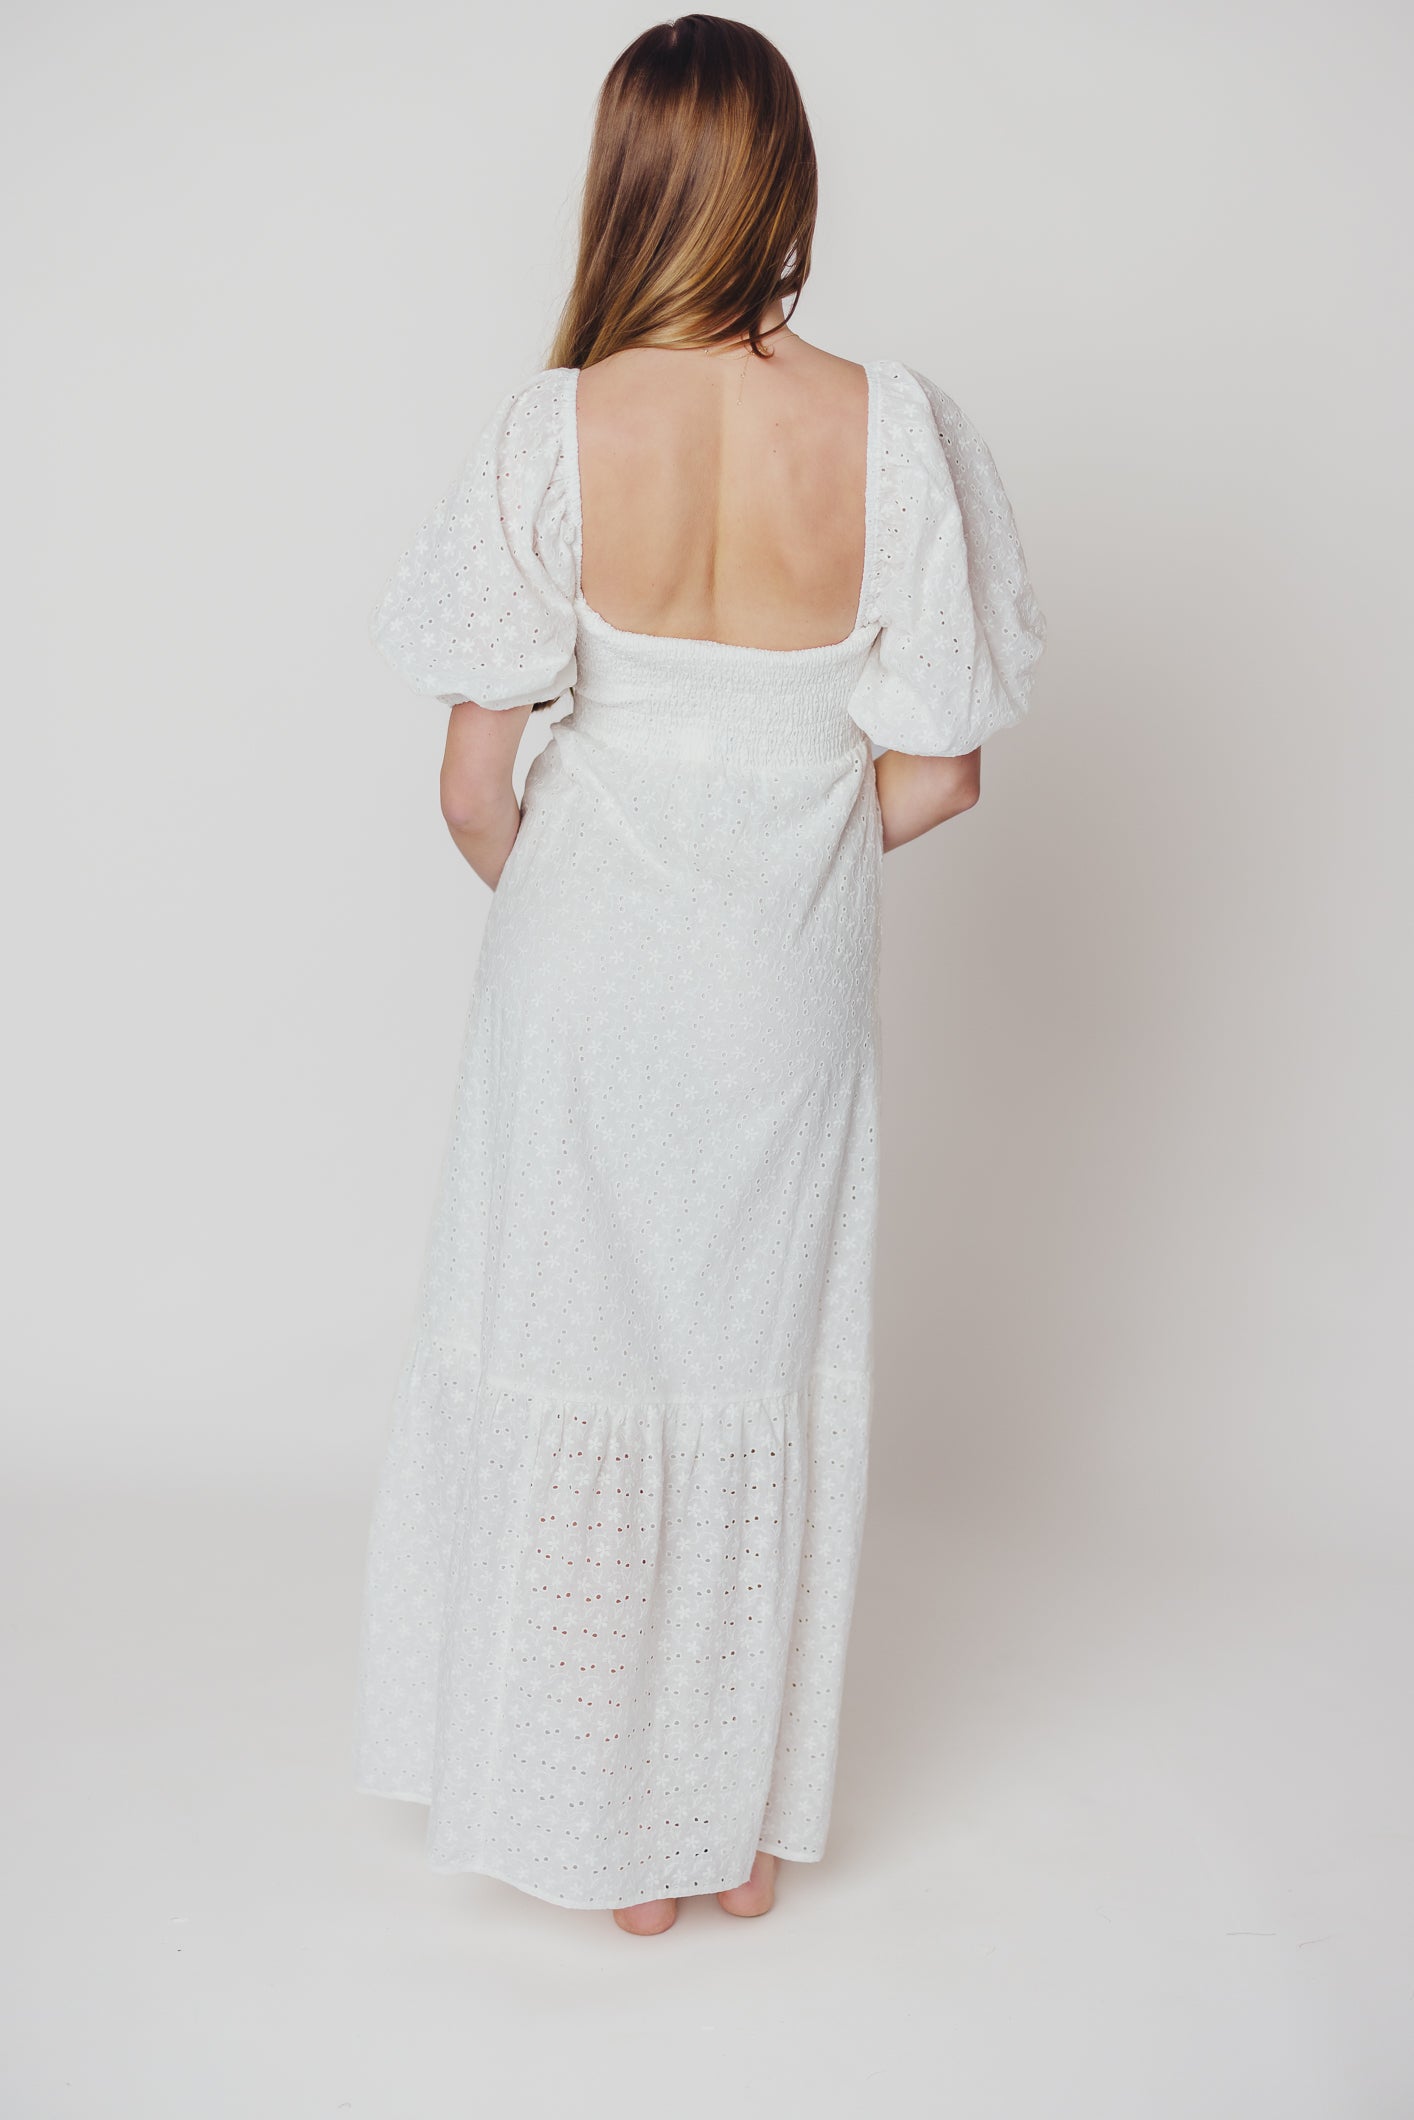 Whitney 100% Cotton Eyelet Maxi Dress in White - Nursing Friendly